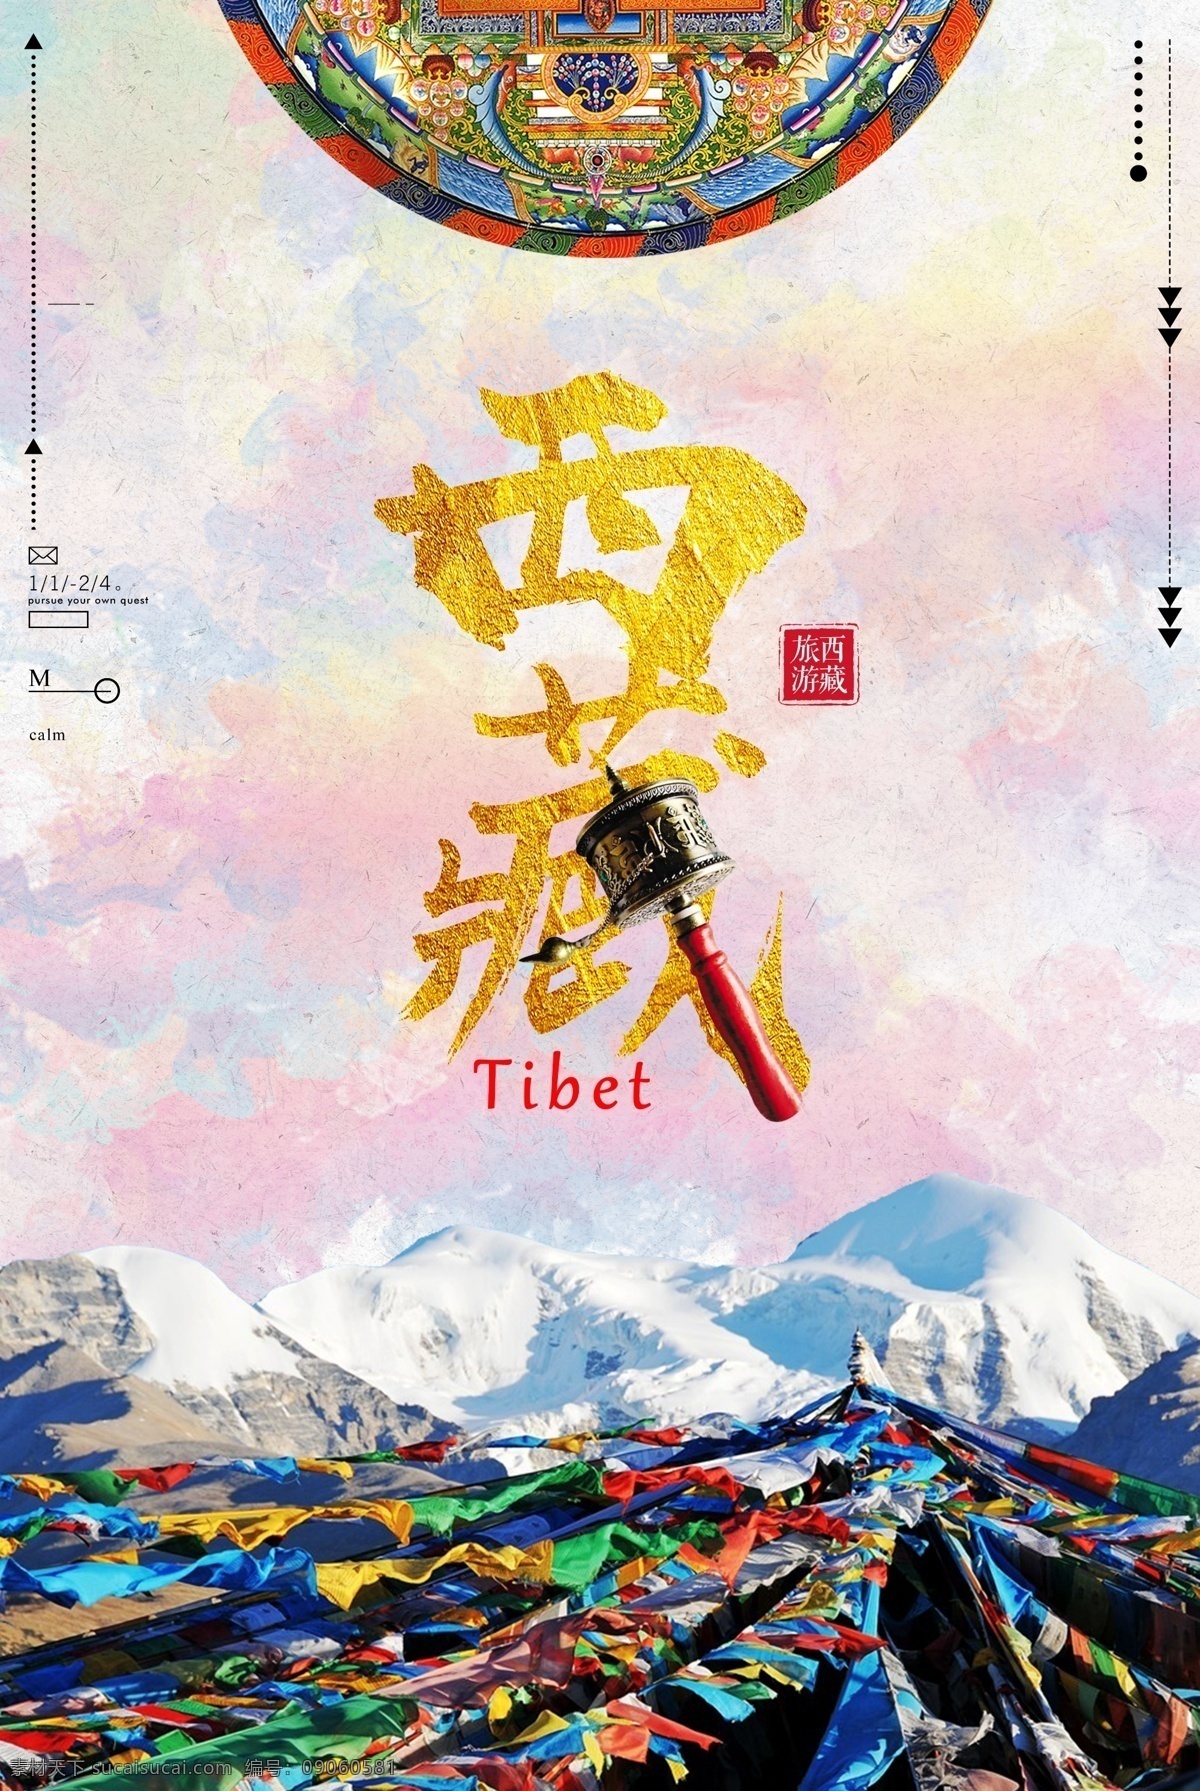 简约 大气 风格 西藏旅游 海报 海报模板 免费 西藏 免费海报设计 免费海报模板 简约海报设计 多彩 简约风格 简约大气 简约大气风格